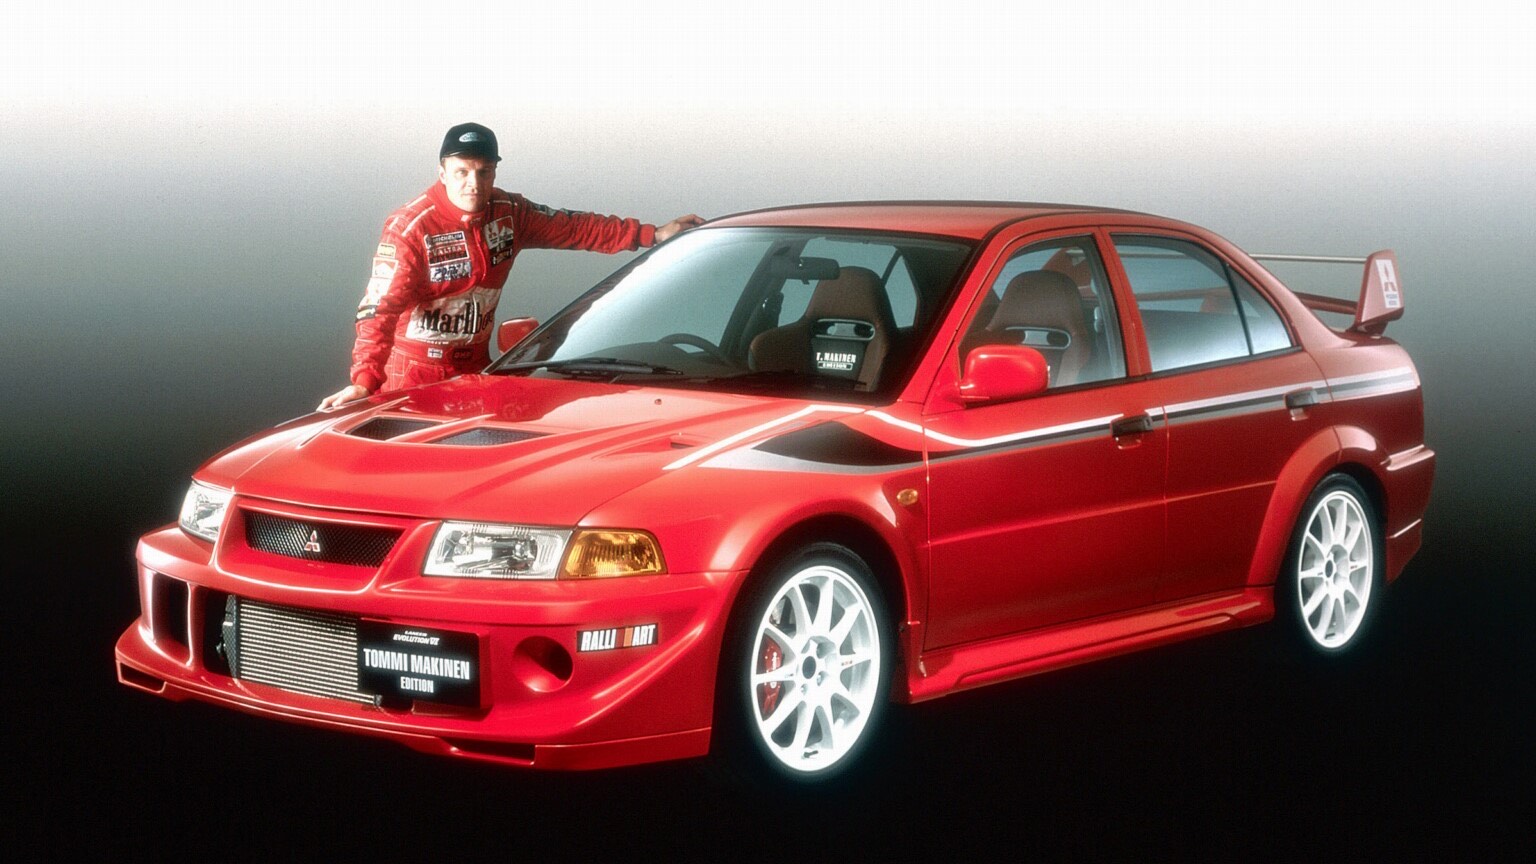 Mitsubishi Evo VI Tommi Makinen Edition Turns 21 This Year